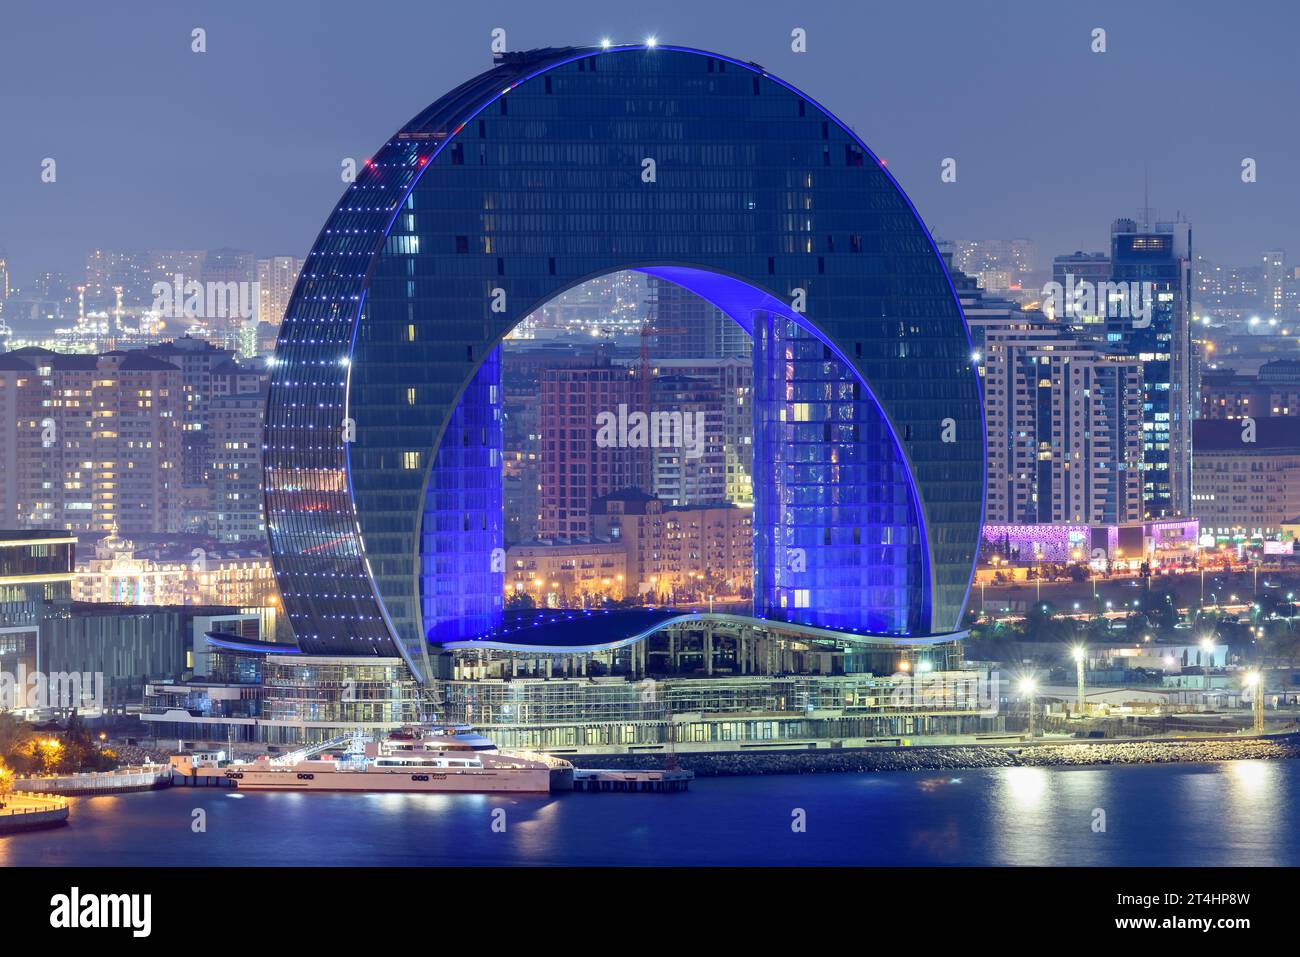 Le projet de développement du Croissant à Bakou, Azerbaïdjan. Tour de verre moderne de la Crescent City. Bâtiment au format croissant de lune. Le Crescent Bay. Banque D'Images